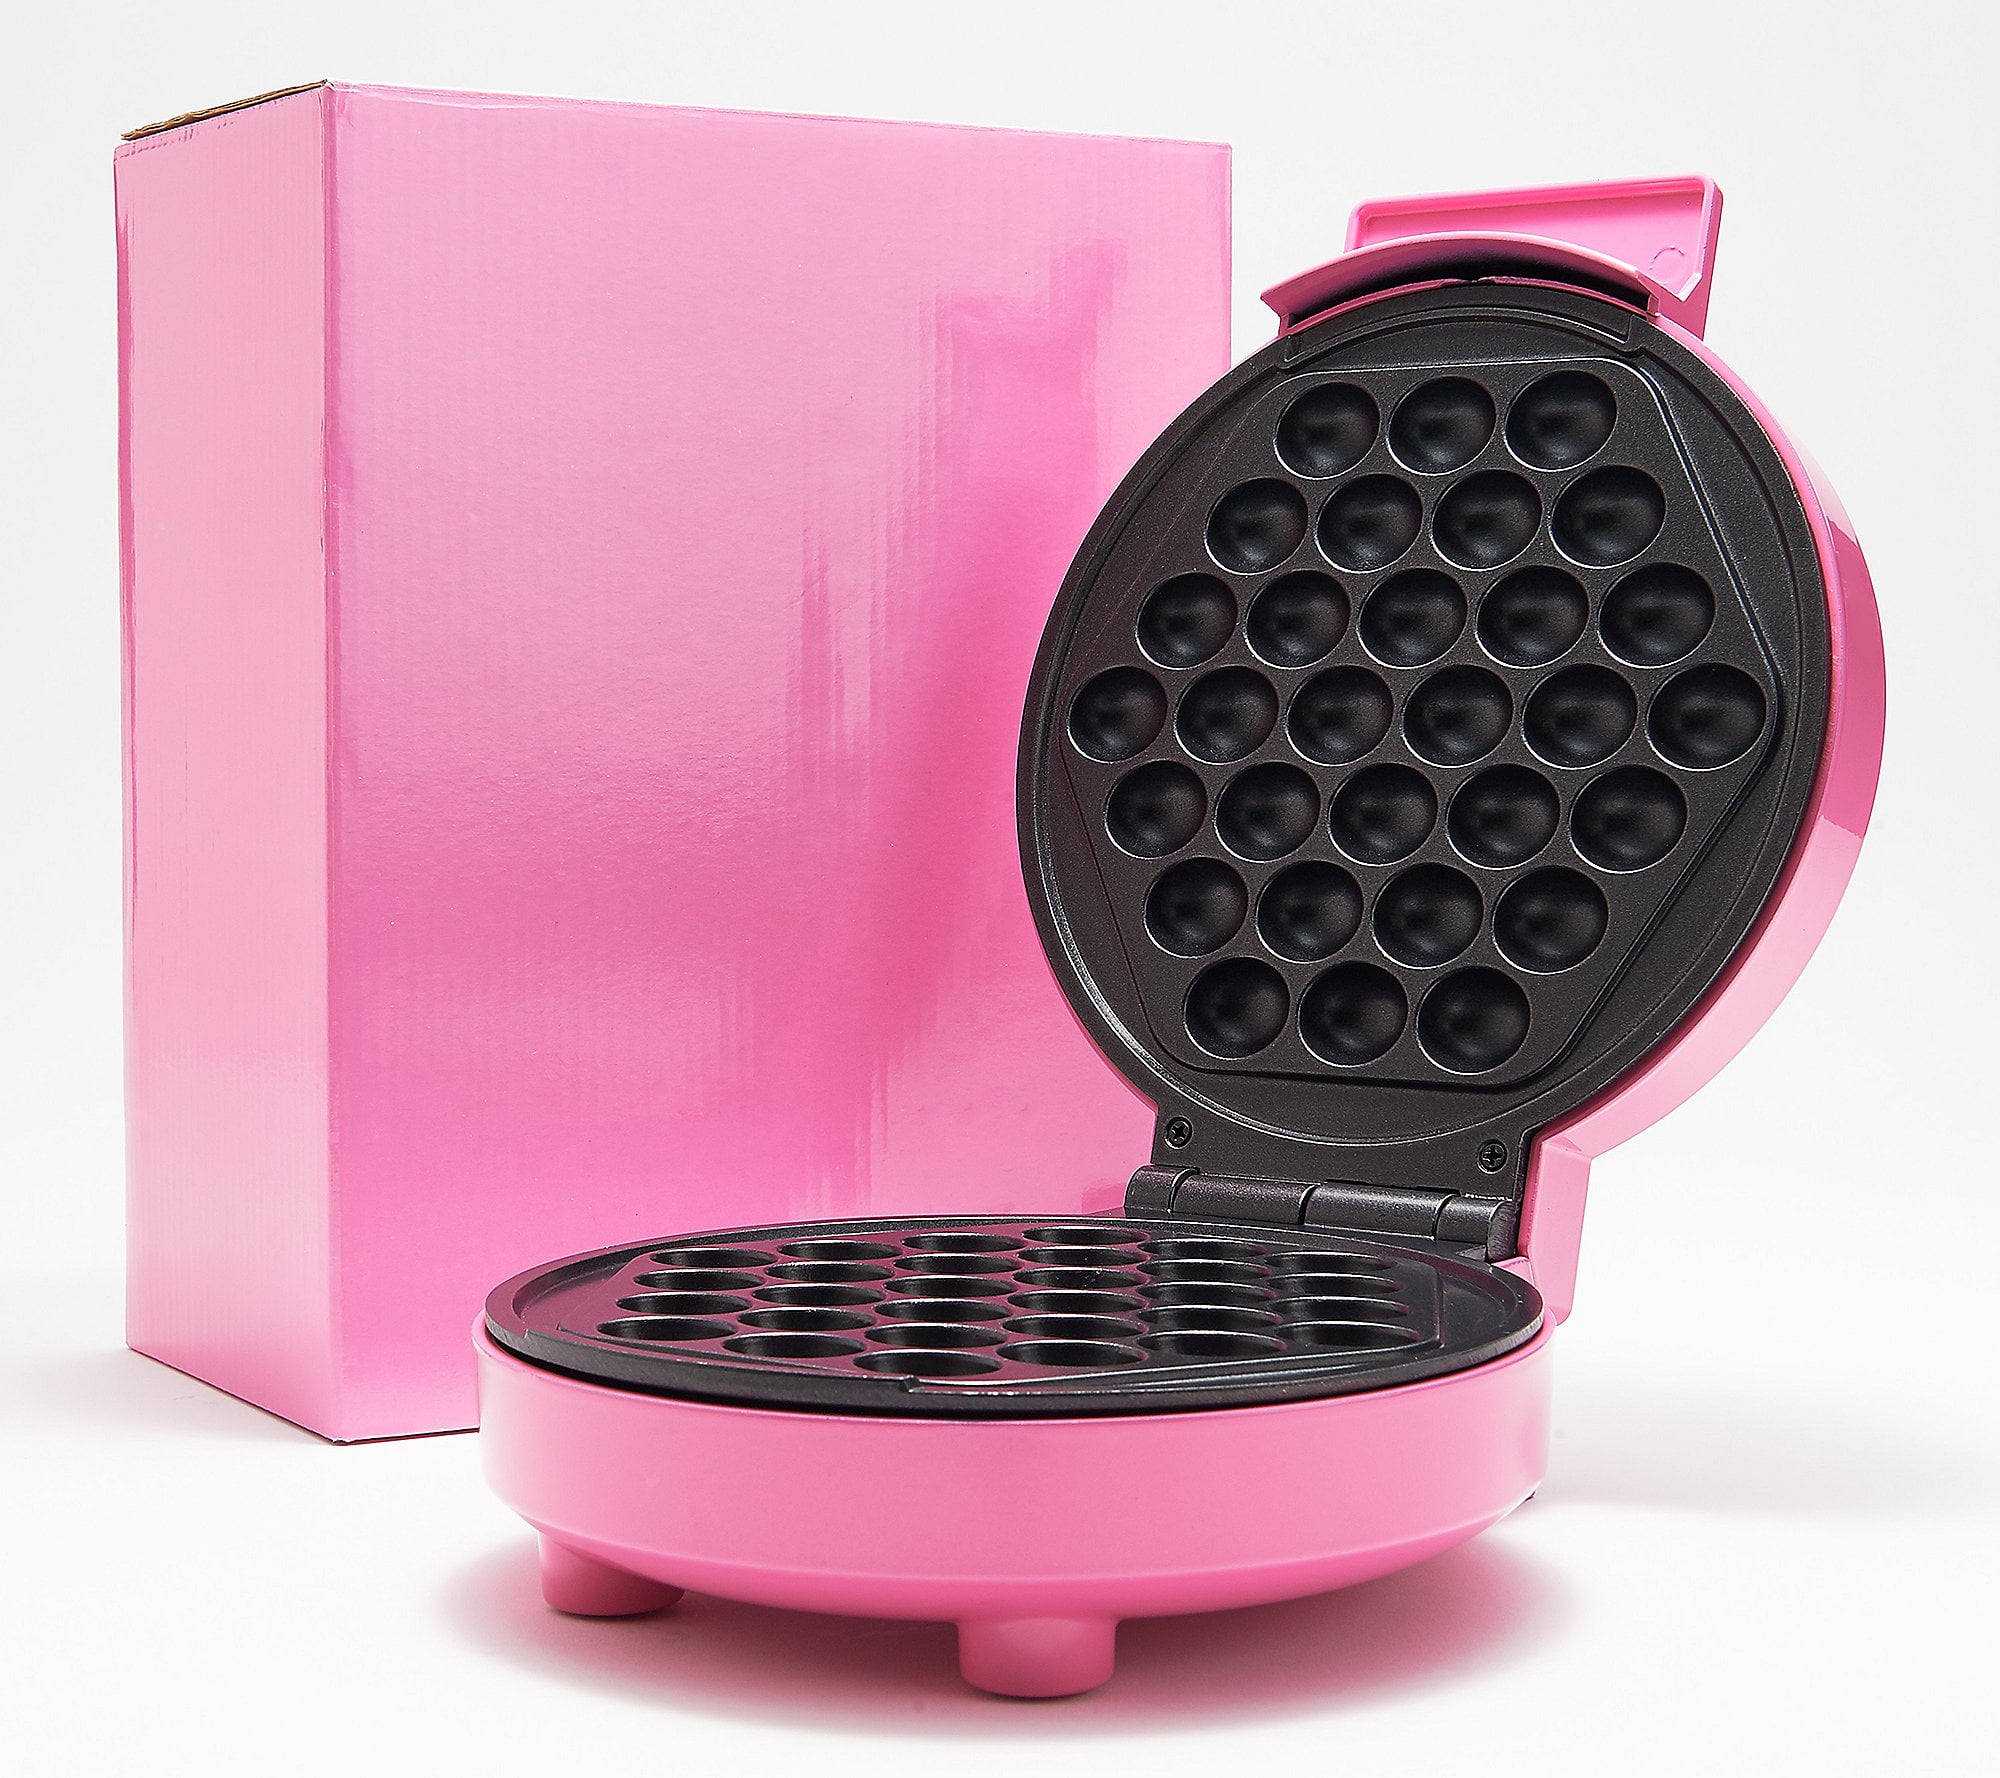 Crownful Mini Waffle Maker Machine, 4 Inches Portable Small Compact Design, Non-Stick, Pink Pomelo